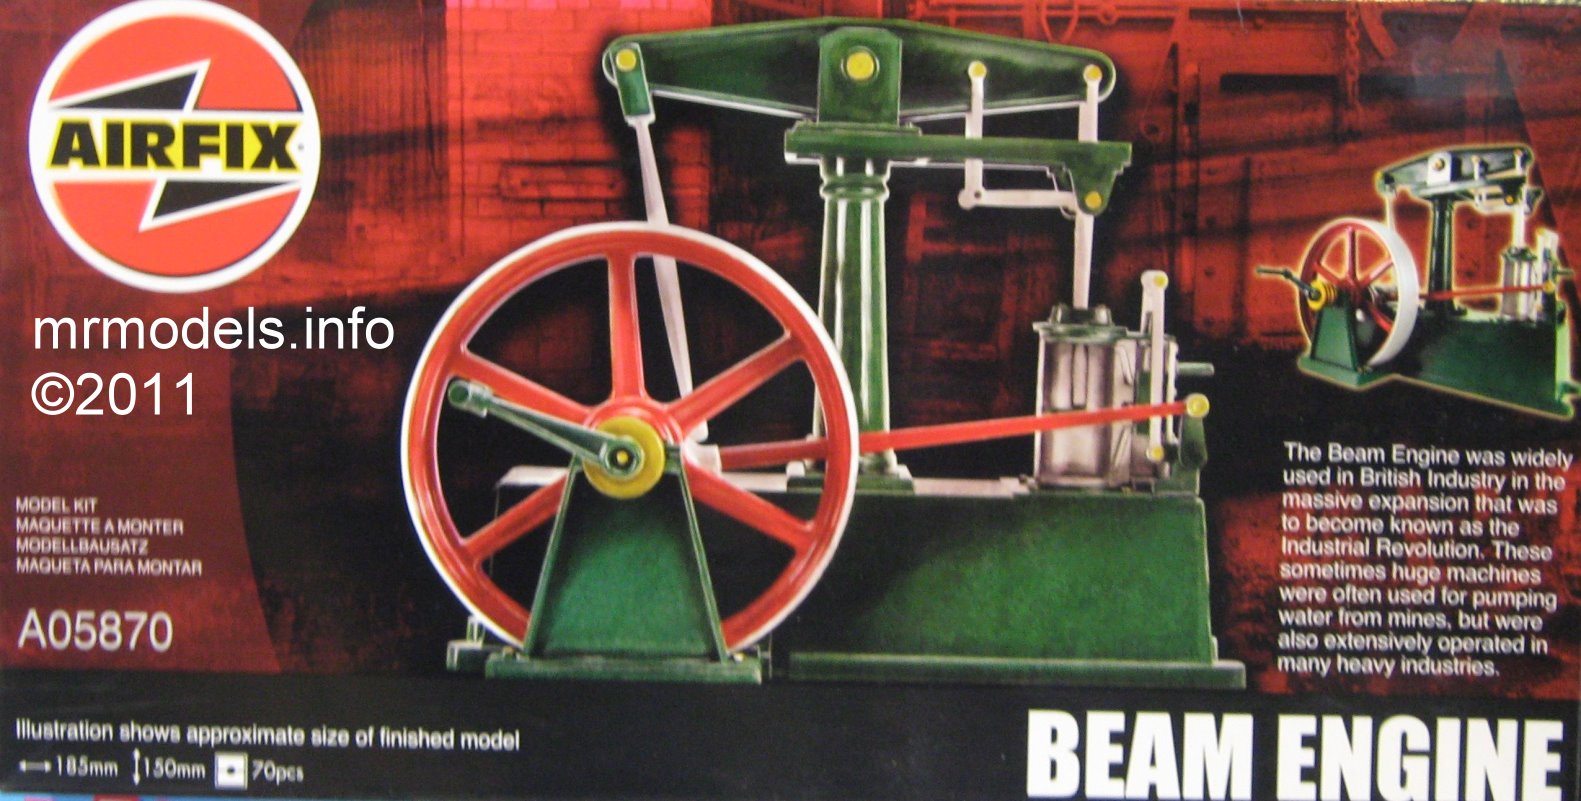 Beam Engine